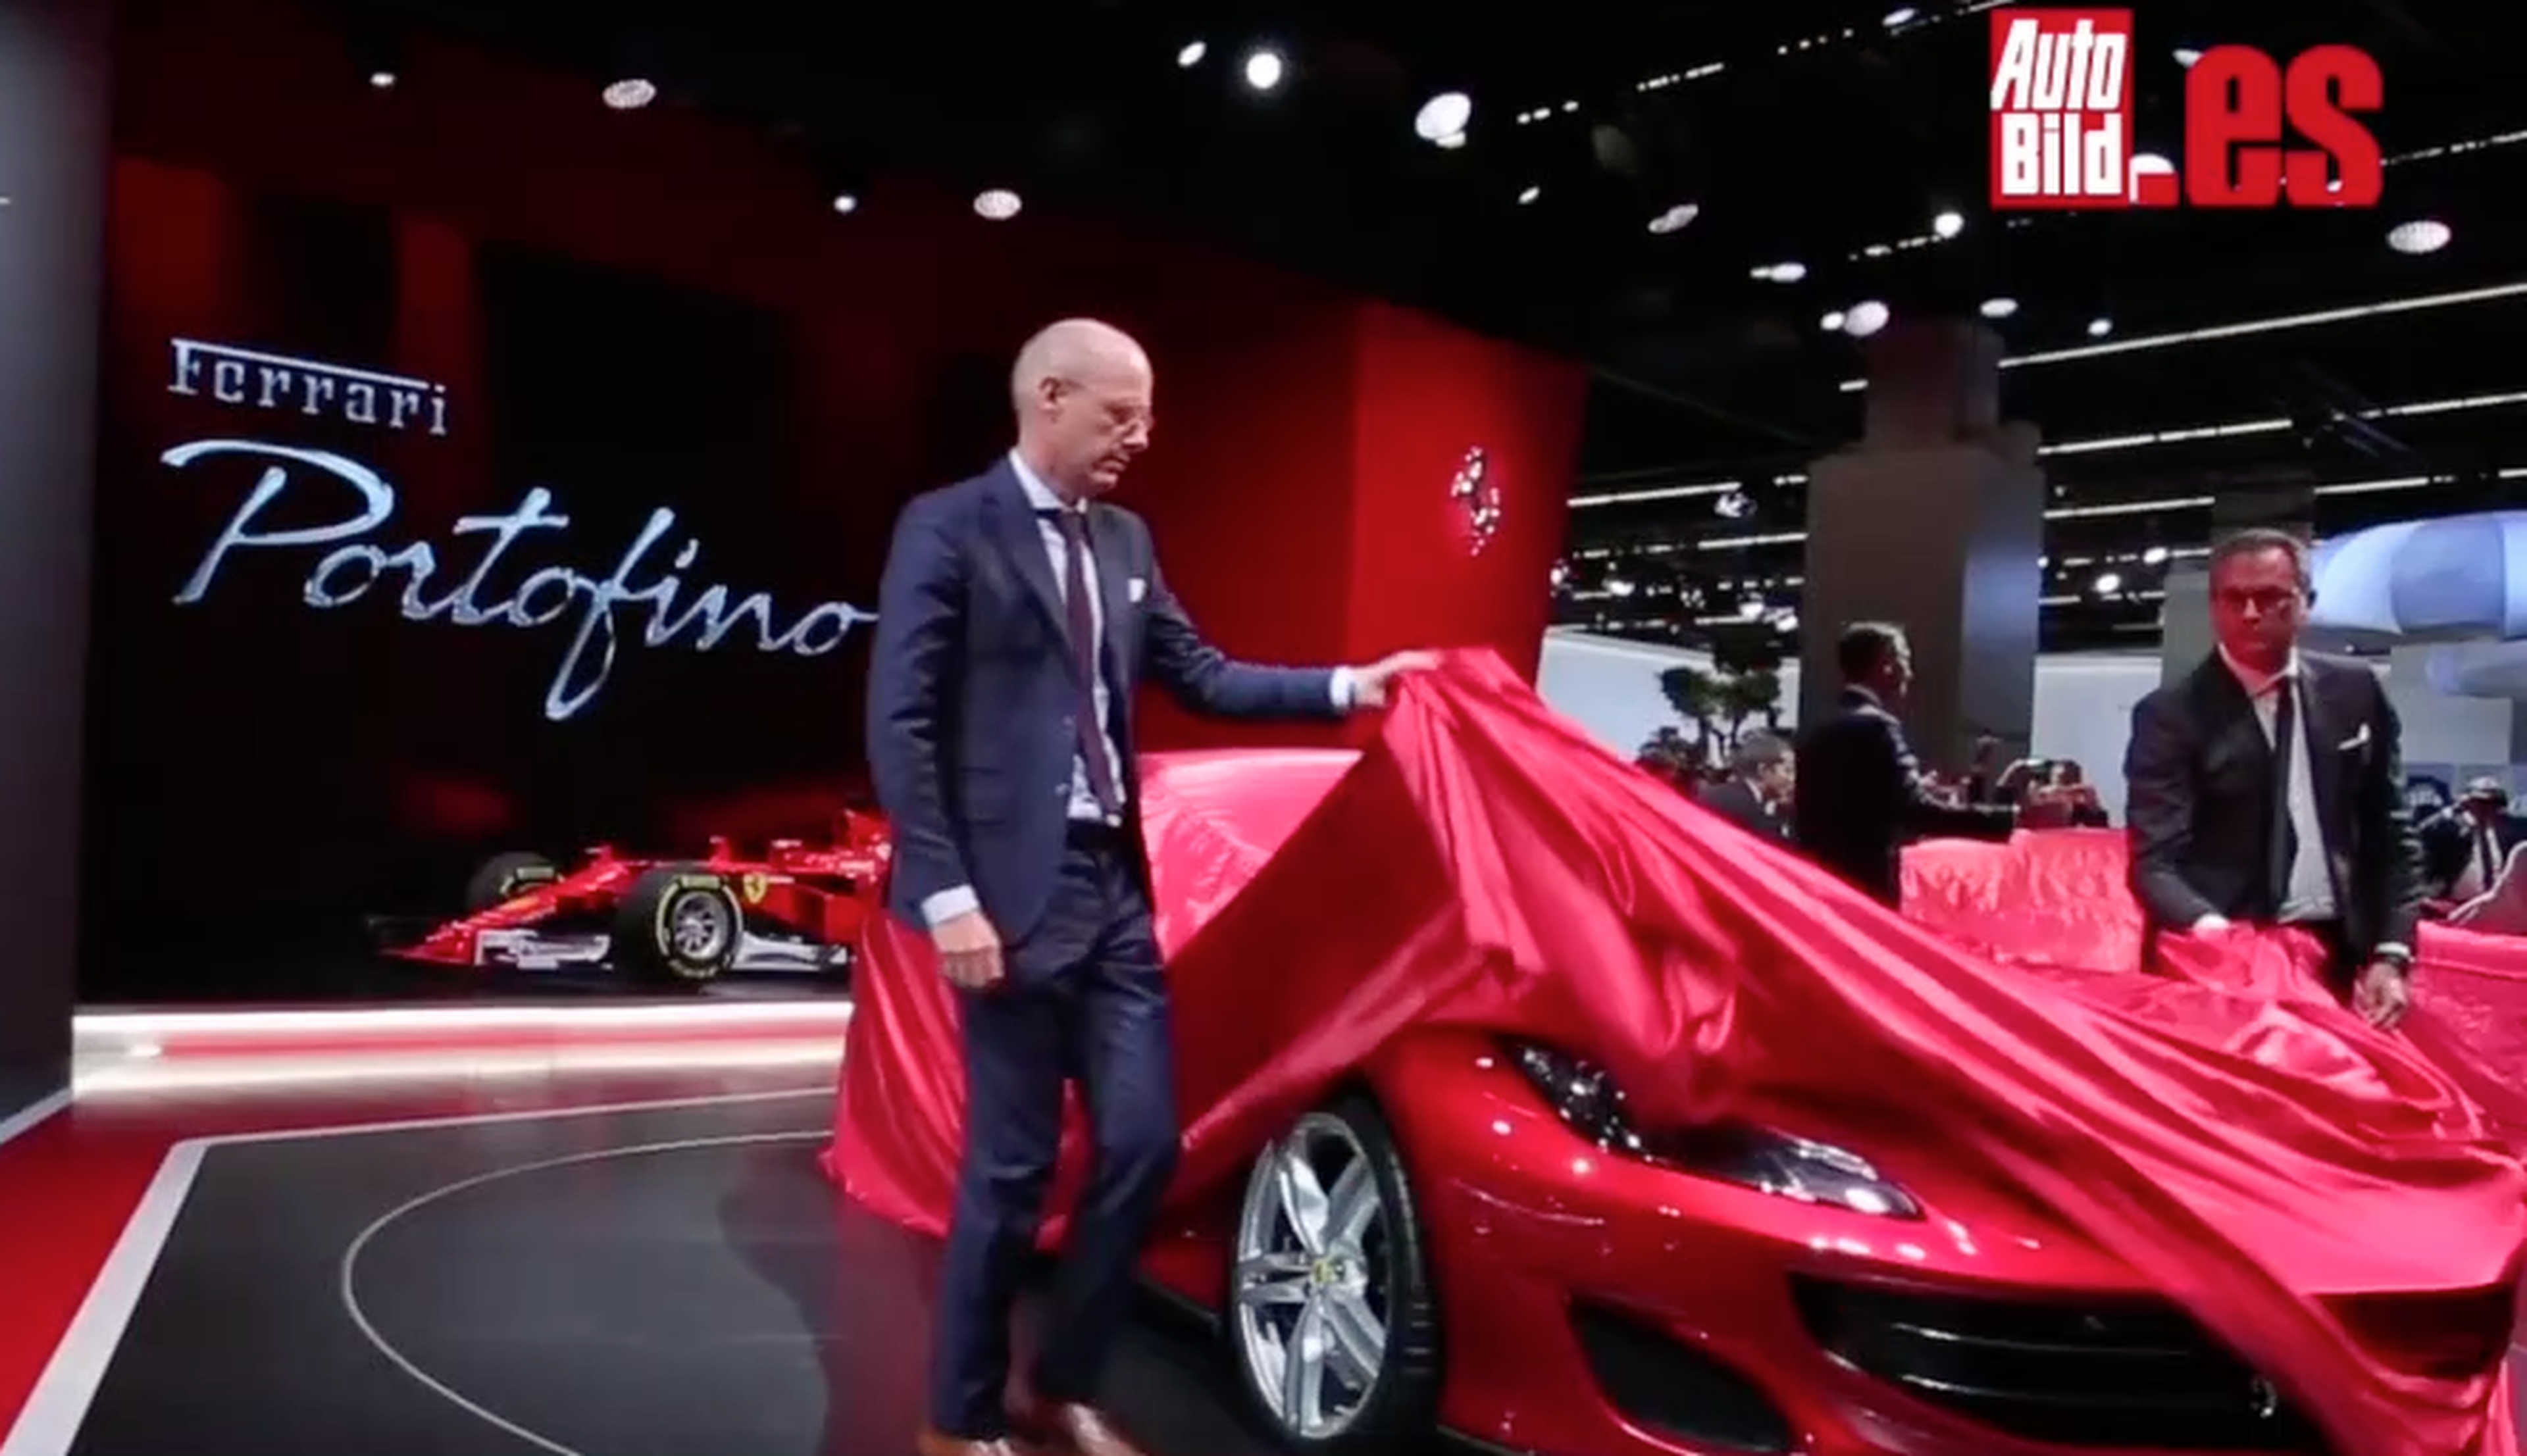 VIDEO: Así se presentó el Ferrari Portofino en el Salón de Frankfurt 2017